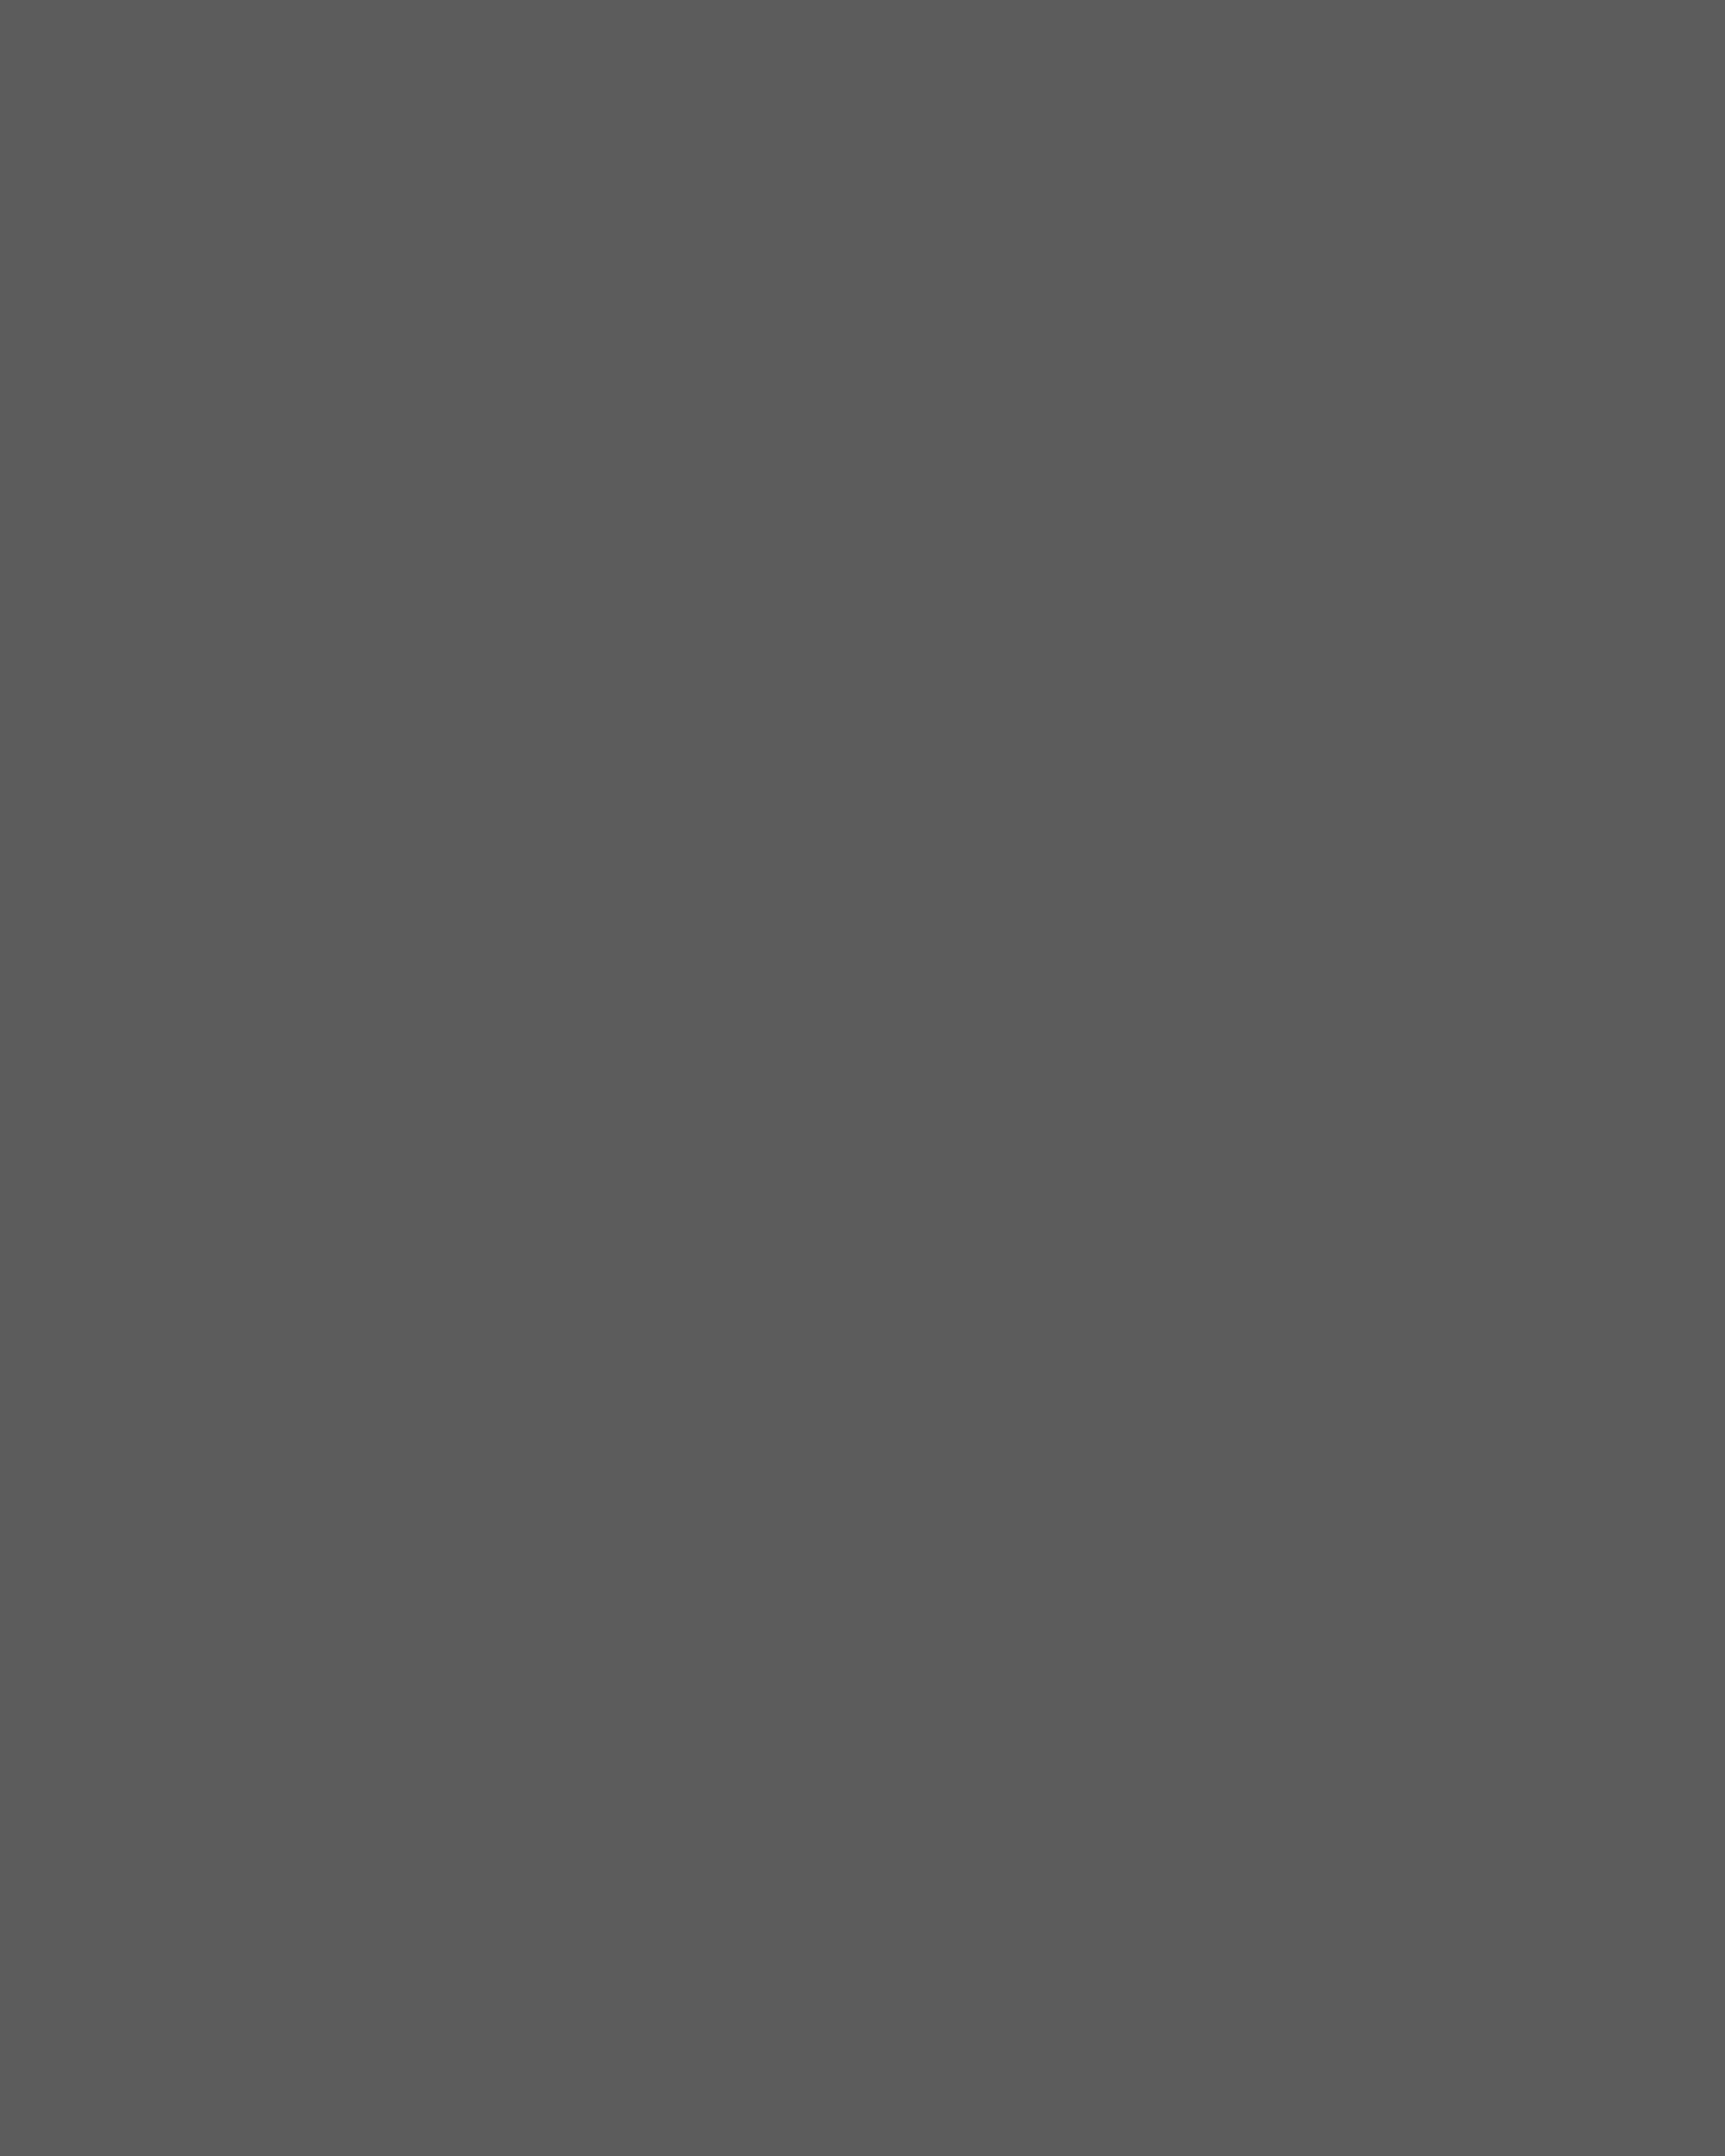 Секретарь Николая Островского Александра Лазарева во время работы над романом «Рожденные бурей». Москва, 1936 год. Фотография: репродукция ТАСС